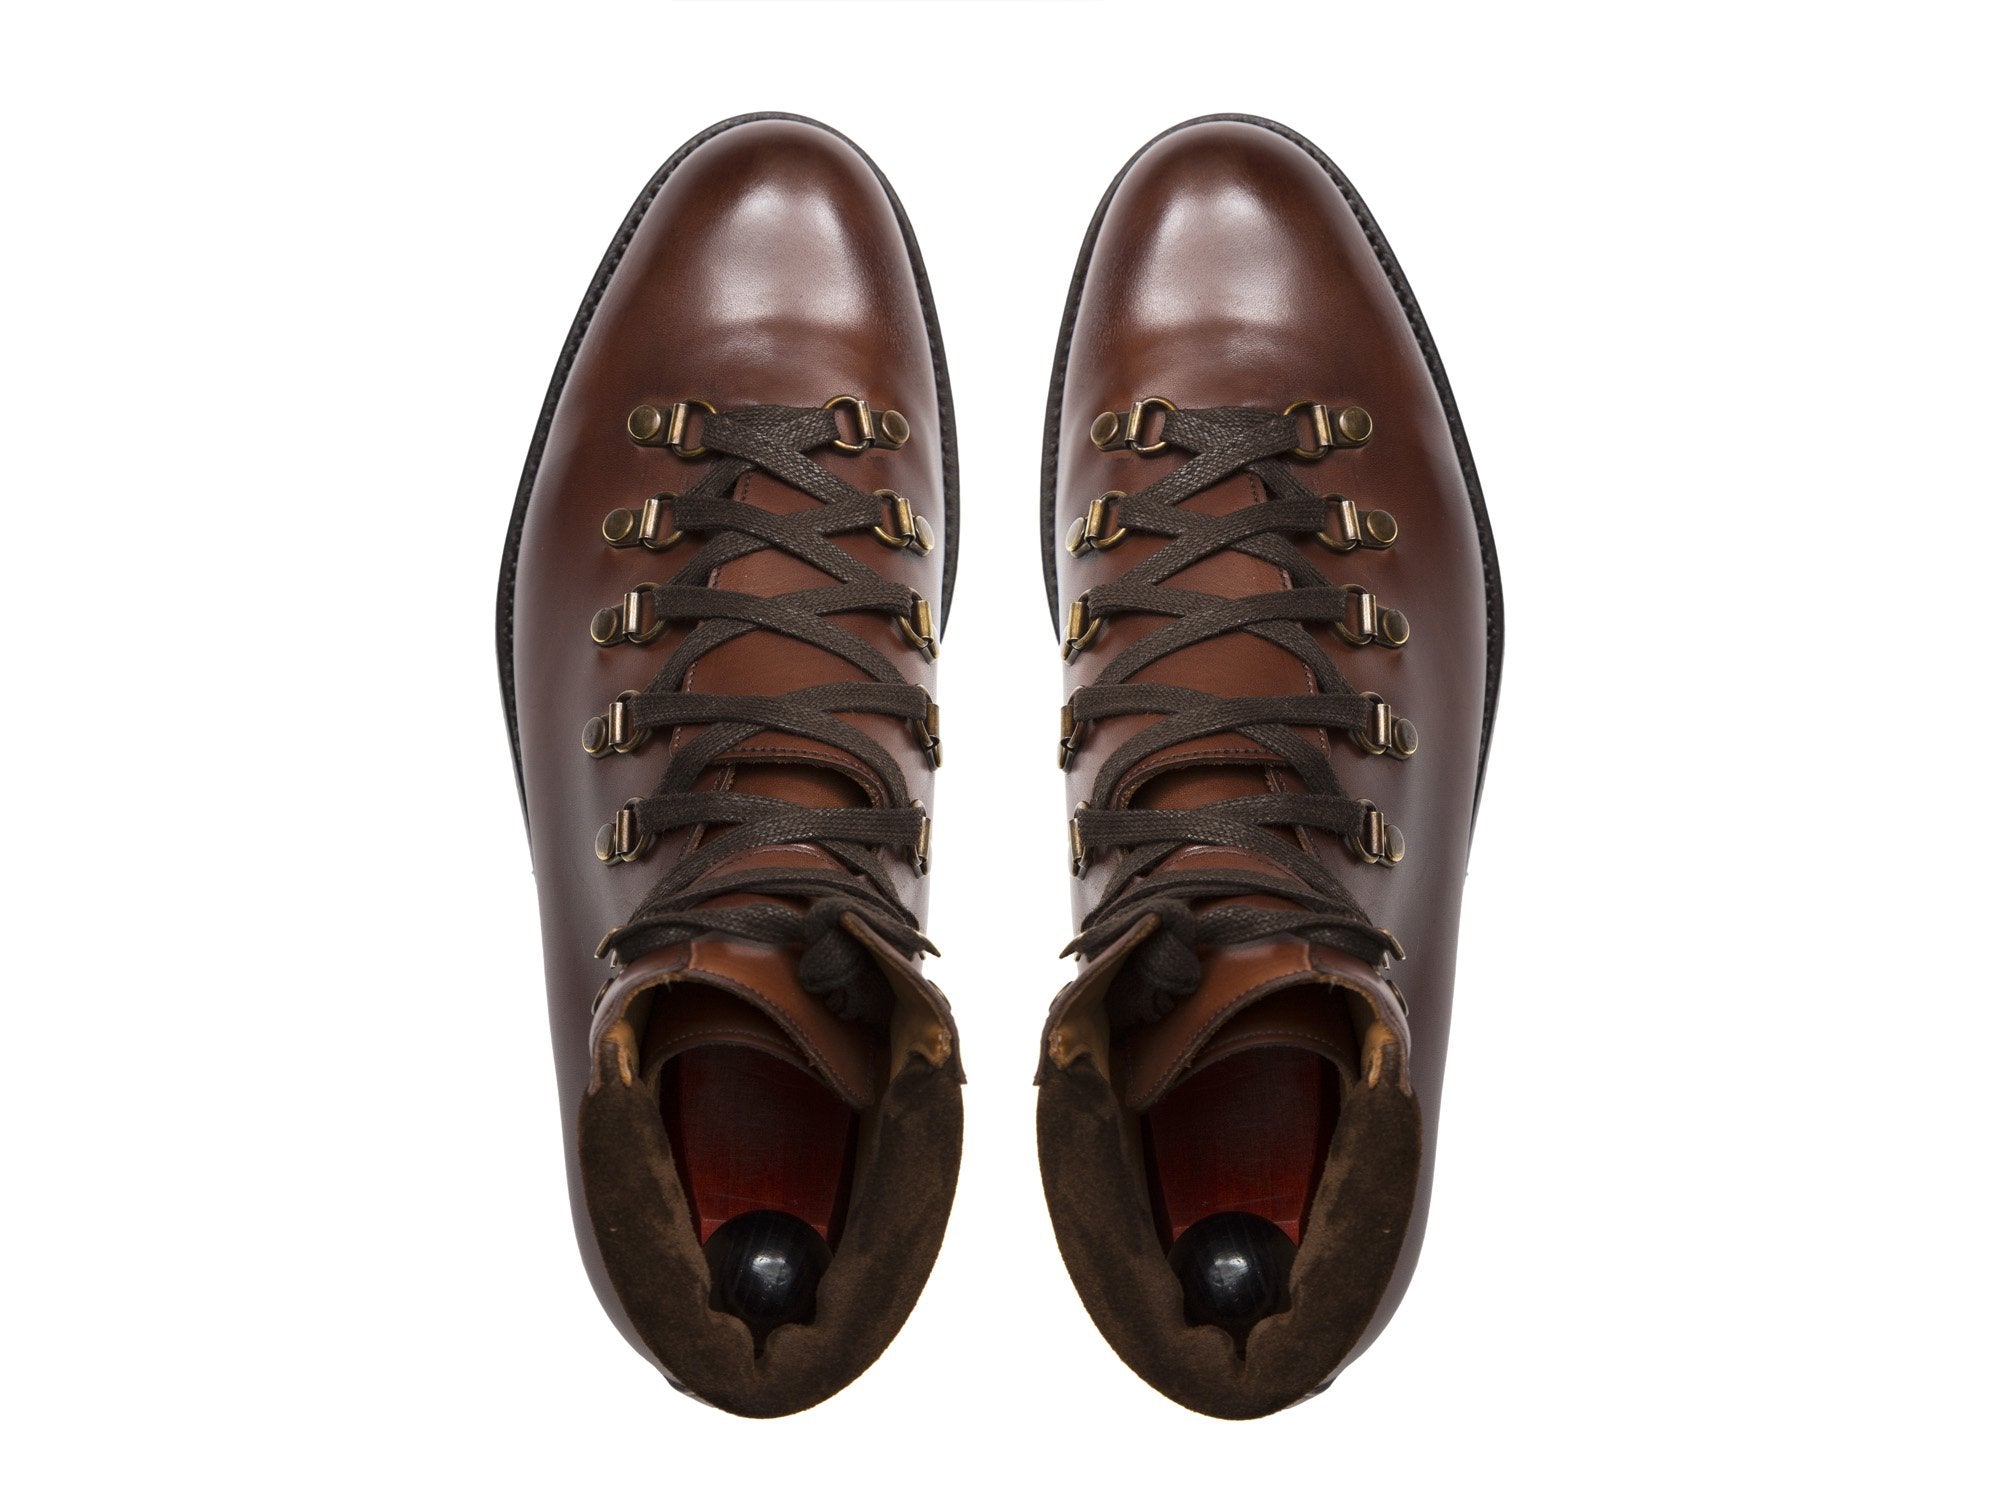 J.FitzPatrick Footwear - Snoqualmie - Cedar Calf - NJF Last - Double Leather Sole